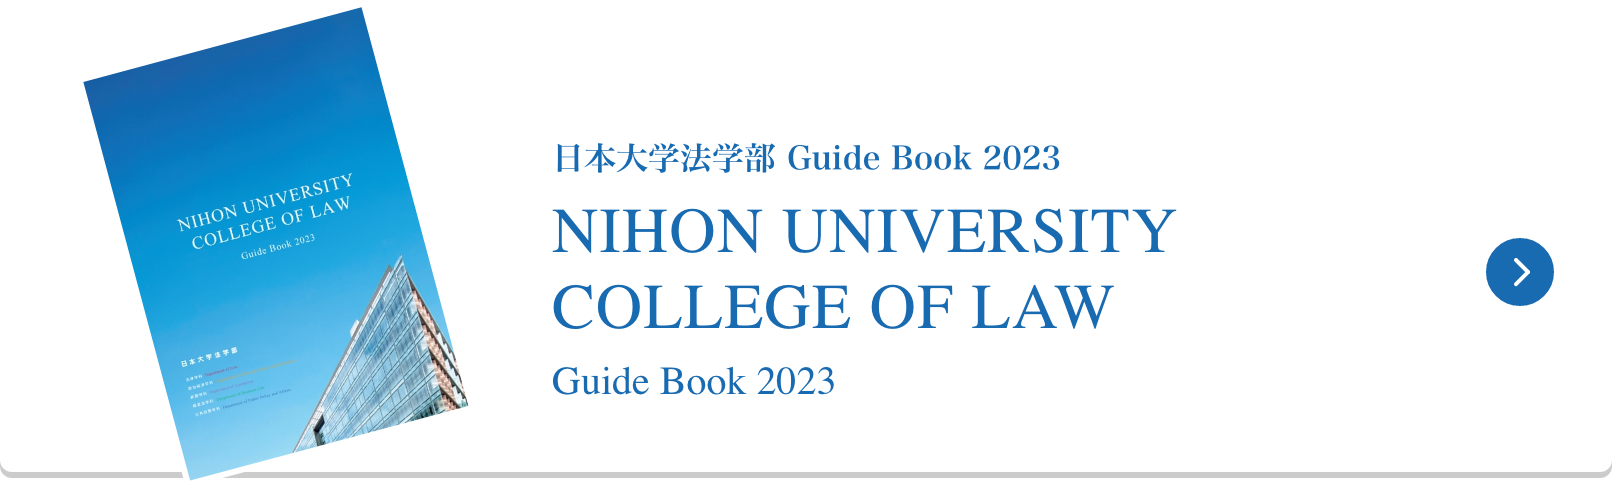 日本大学法学部 Guide Book 2023